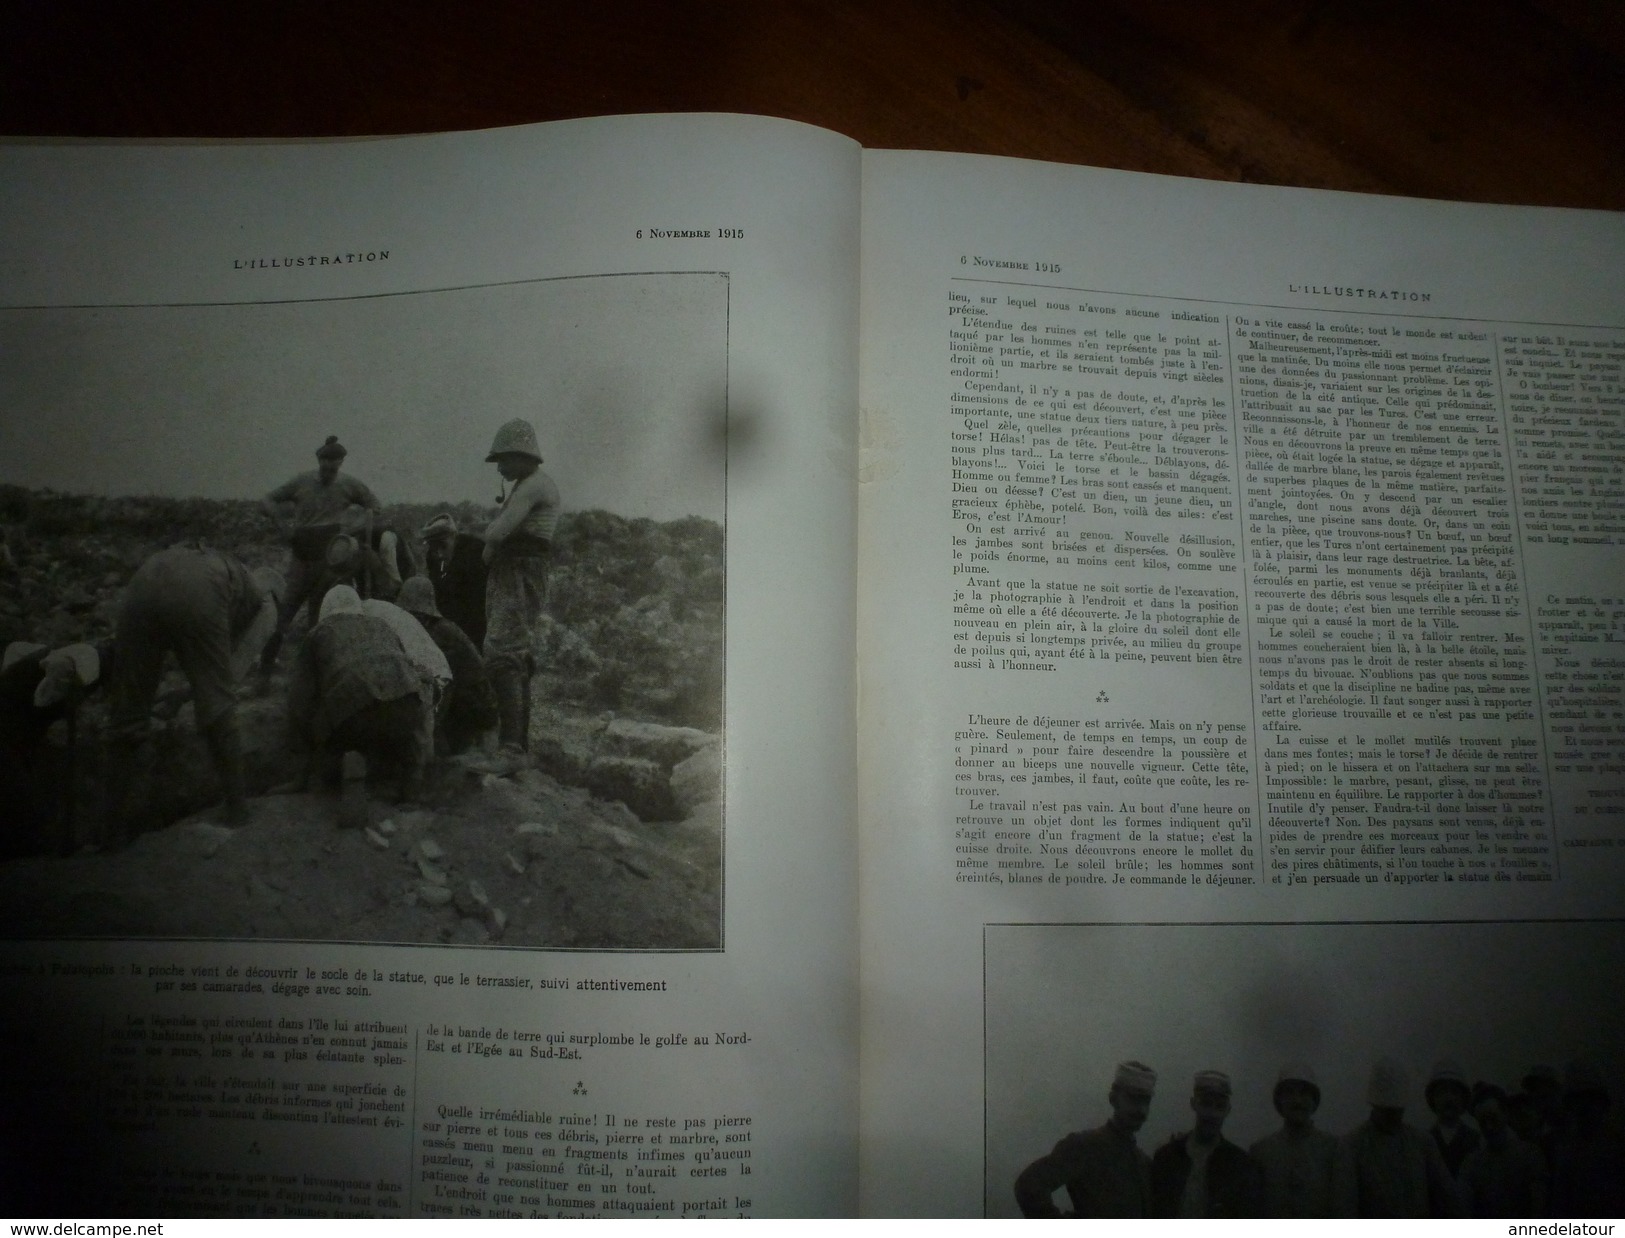 1915 L'ILLUSTRATION :Litho couleur Gl HUMBERT; Découverte EROS à Palaïopolis ; Pubs (montre Zenith, etc);Pages d'honneur